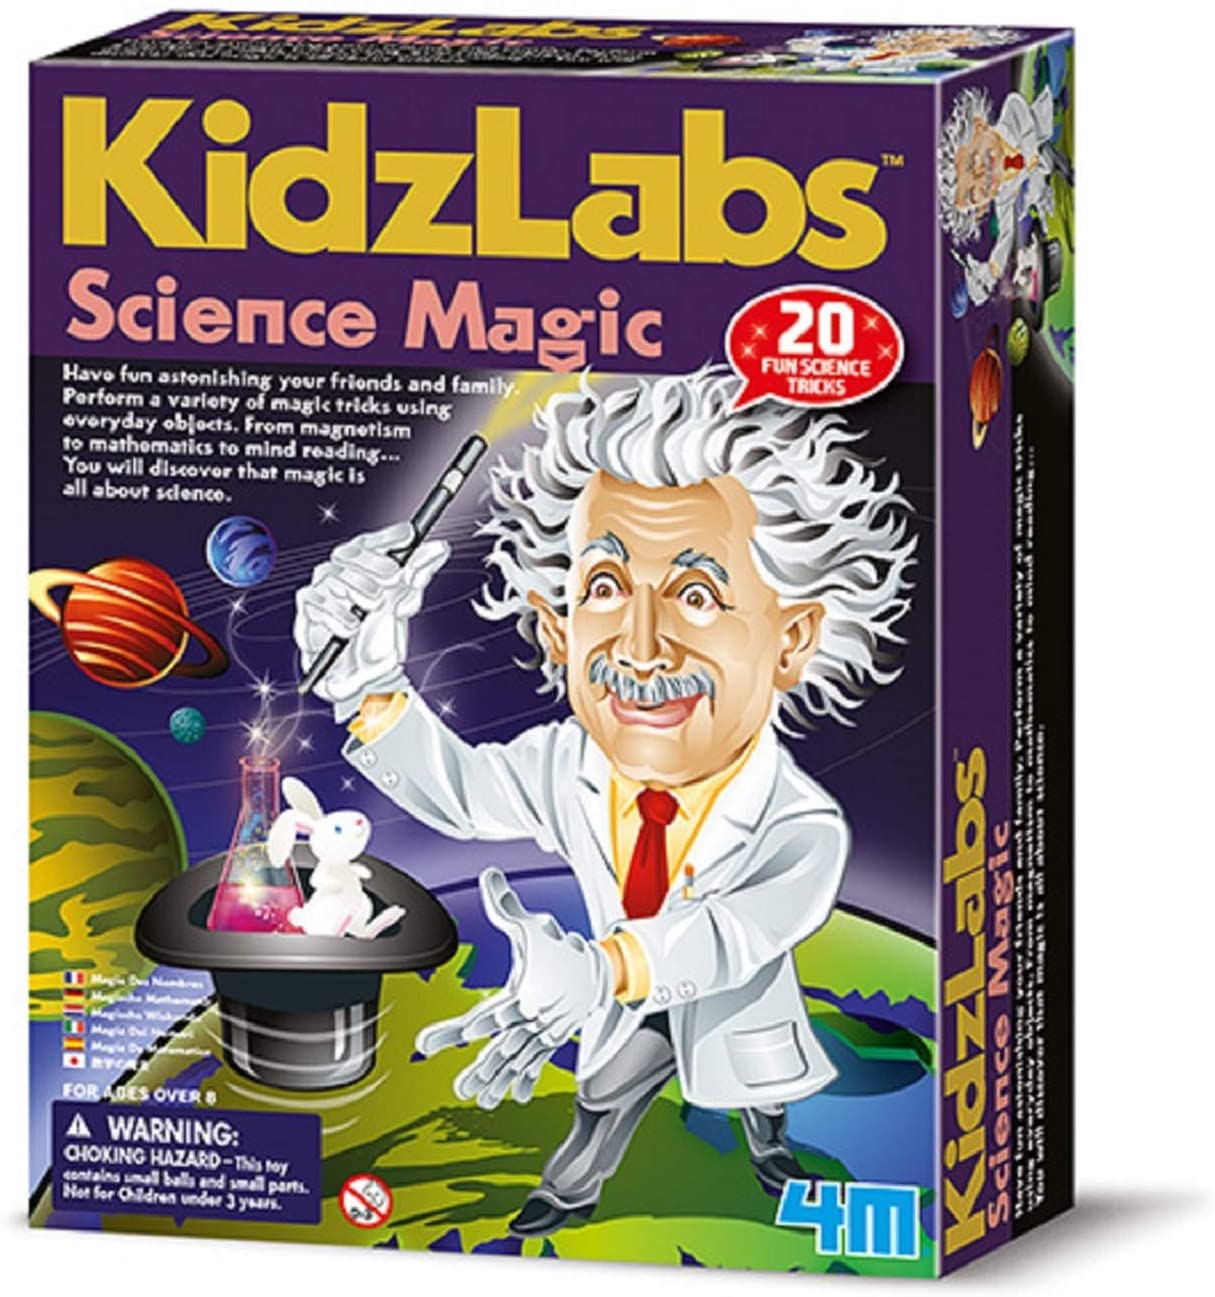 Kidzlabs Science Magic set